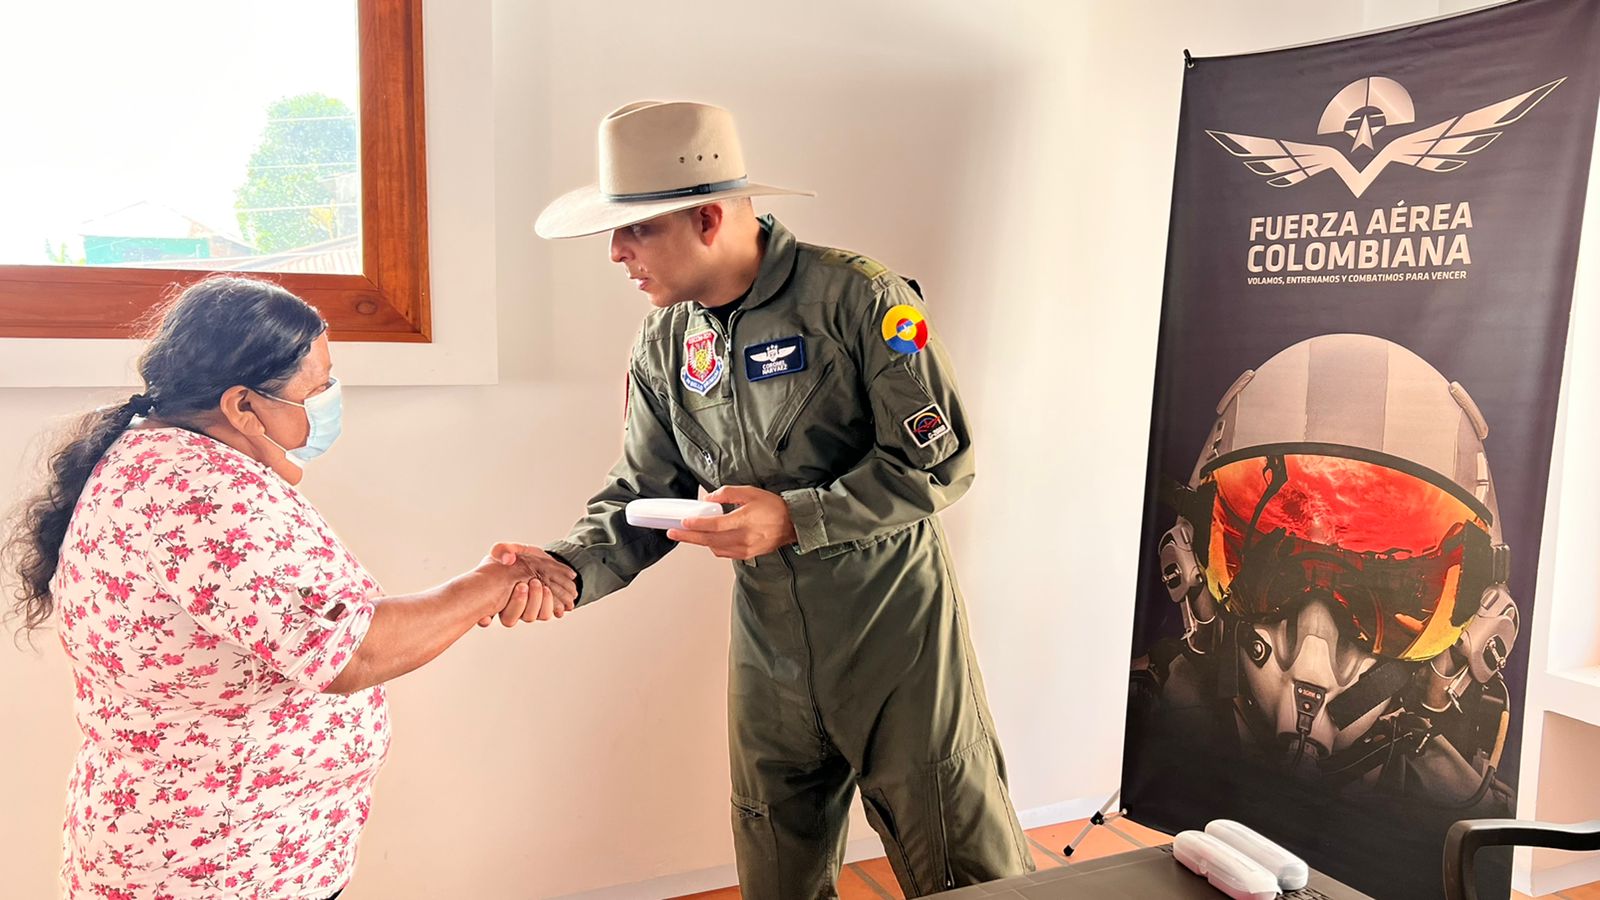 Salud y bienestar para los habitantes de Támara, Casanare gracias a su Fuerza Aérea